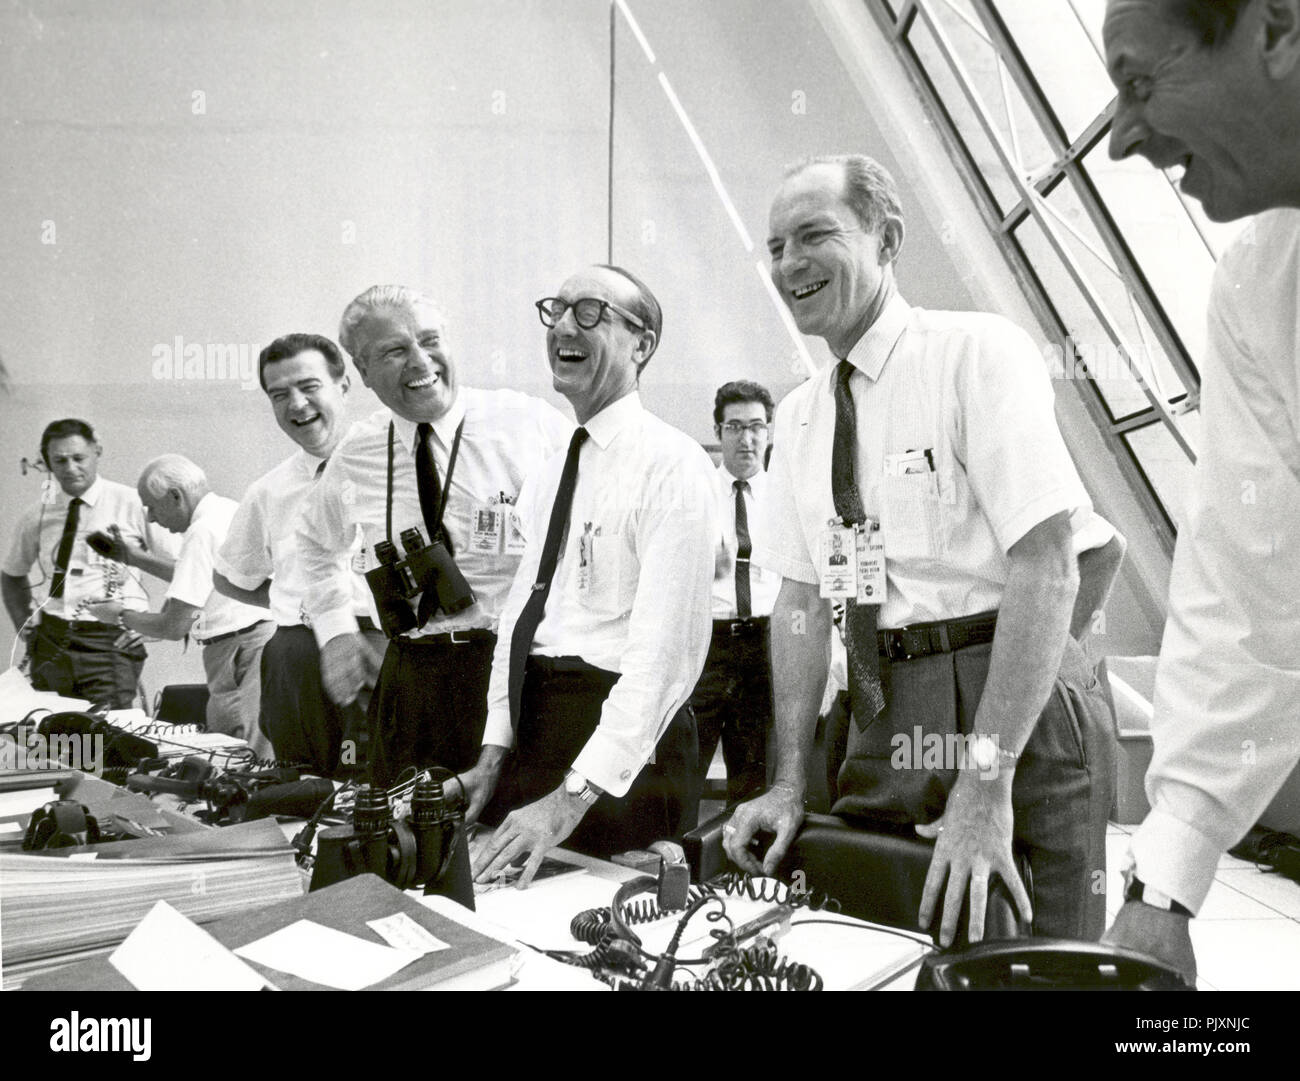 Cape Canaveral, FL - (Archivo) -- funcionarios de la misión Apolo 11 relájese en el Centro de Control de lanzamiento del Apolo 11 tras el éxito del despegue el miércoles, 16 de julio de 1969. De izquierda a derecha son: Charles W. Mathews, Administrador Asociado Adjunto para el vuelo espacial tripulado; el Dr. Wernher von Braun, Director del Centro Marshall de Vuelos Espaciales; George Mueller, Administrador Asociado para la Oficina de vuelo espacial tripulado; El Teniente General Samuel C. Phillips, Director del Programa Apolo Crédito: NASA via CNP /MediaPunch Foto de stock